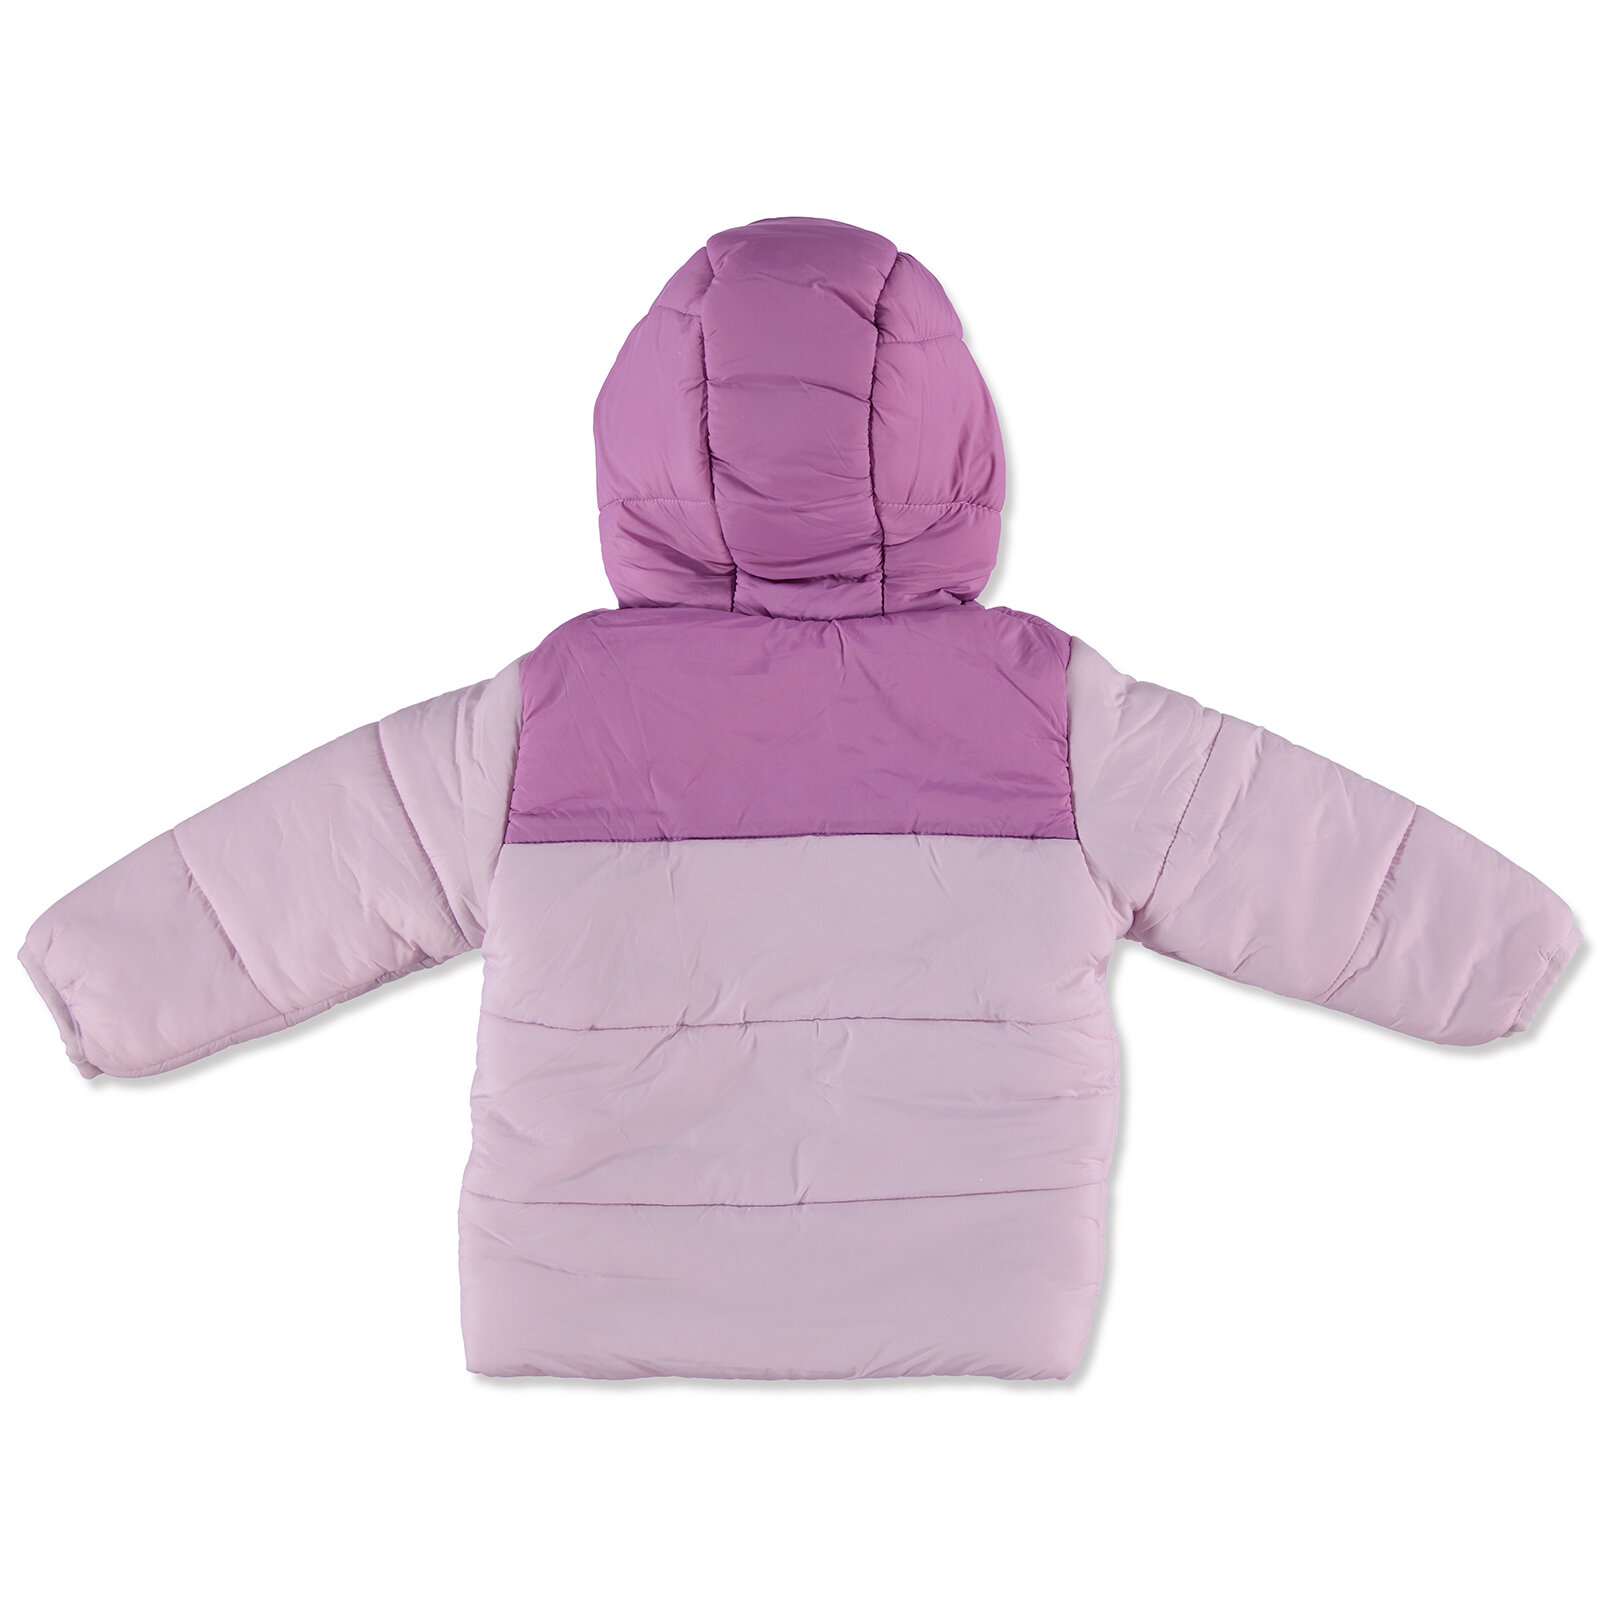 Kış Kız Bebek Basic İki Renkli Kapüşonlu Mont